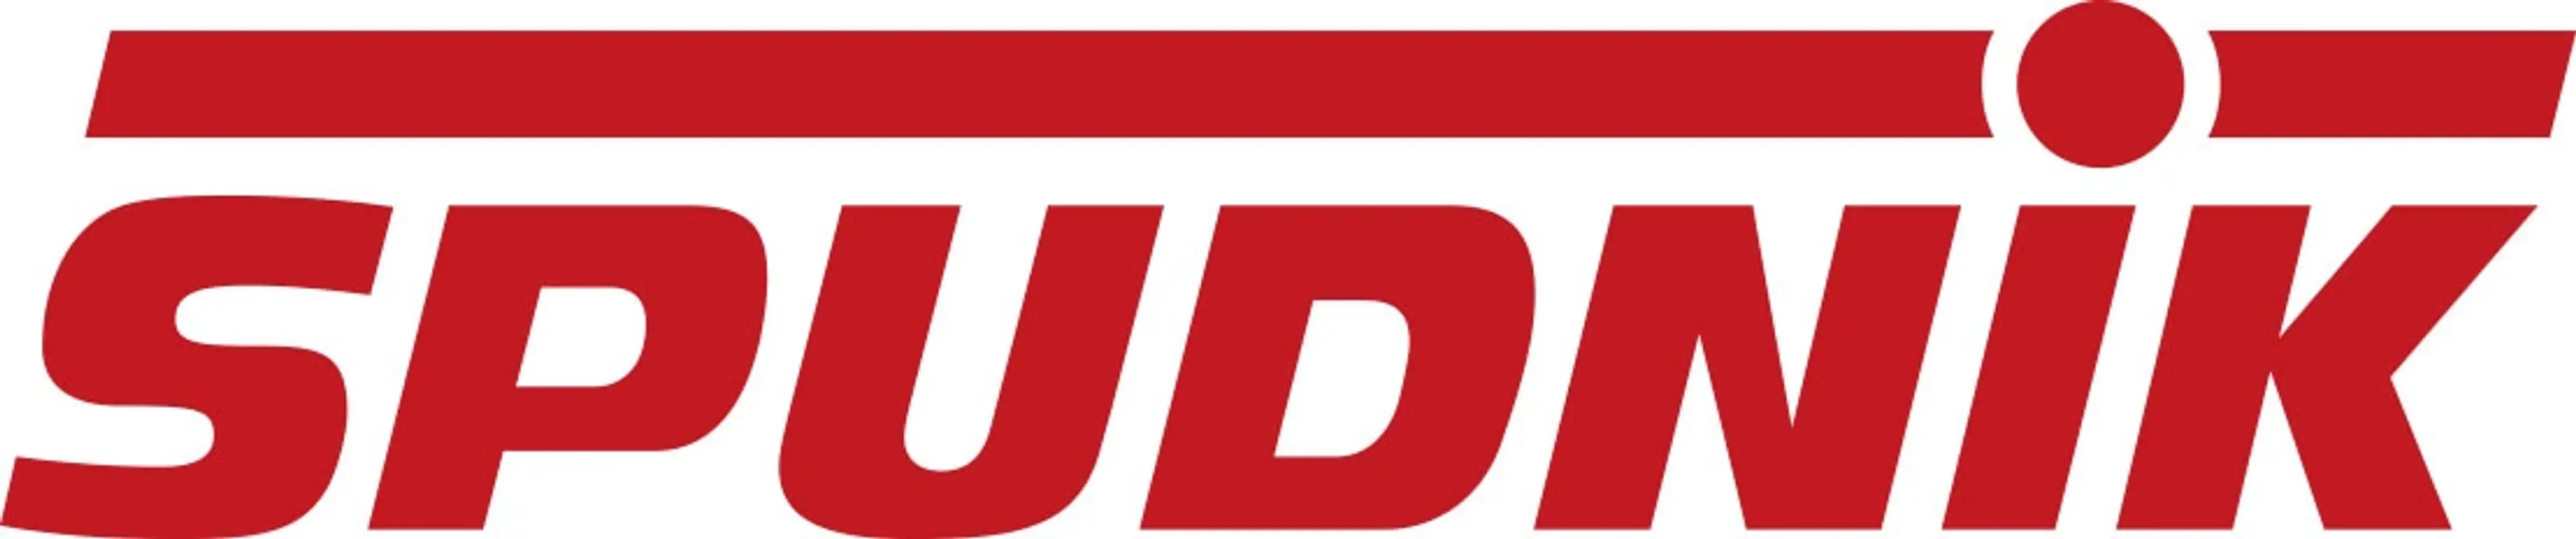 Spudnik Logo